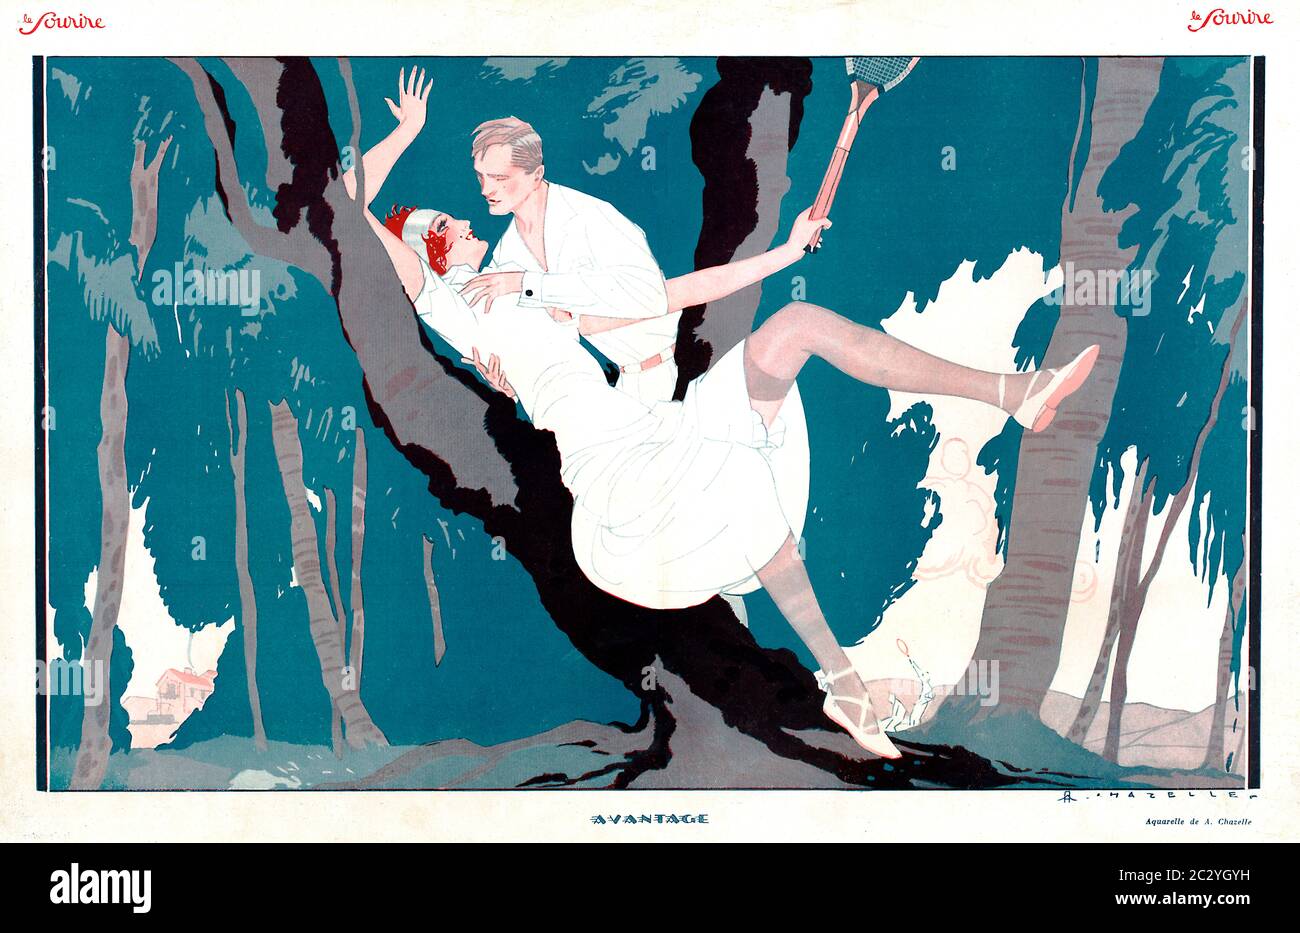 Avantage, 1925 ilustración de la revista francesa le Sourir, los jugadores de tenis han dejado la cancha para retozar en el bosque, y parece que está aprovechando Foto de stock